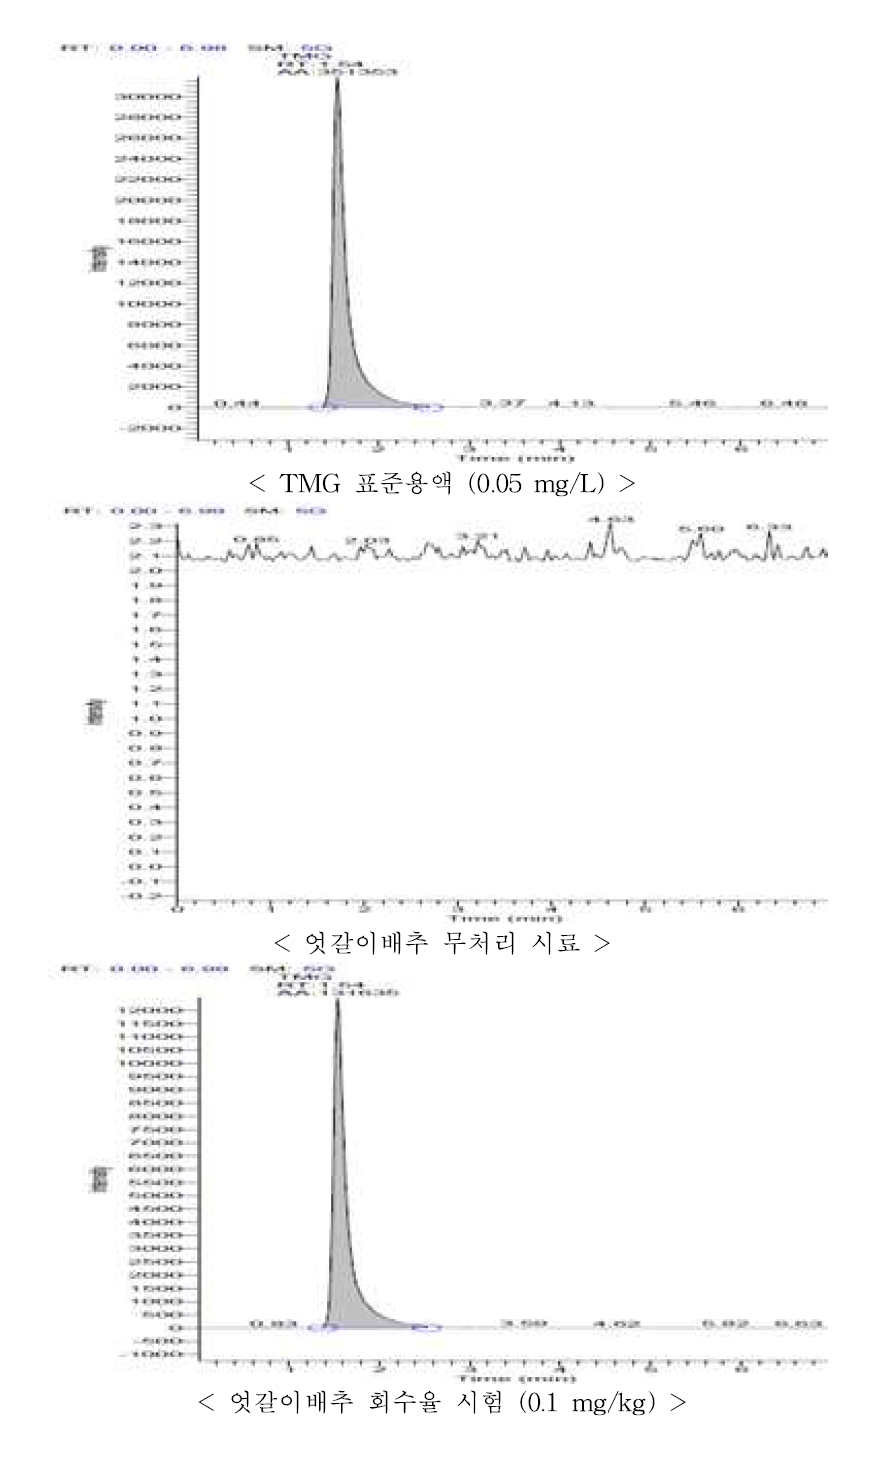 엇갈이배추 중 TMG의 회수율 크로마토그램